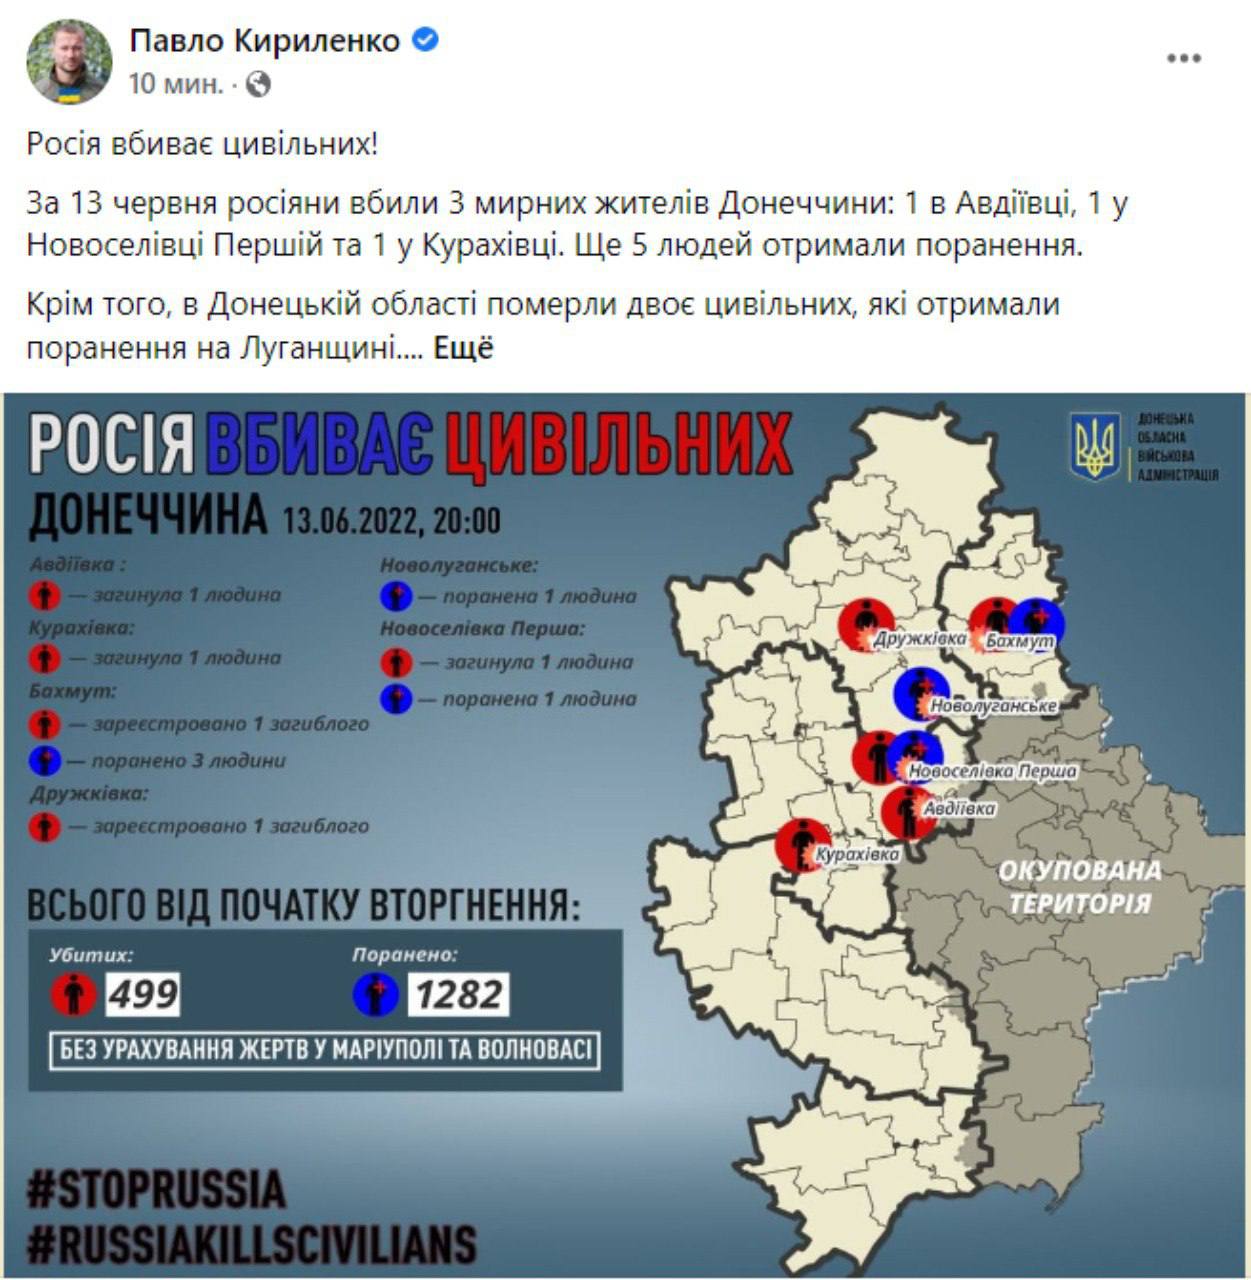 В Донецкой области погибли мирные жители